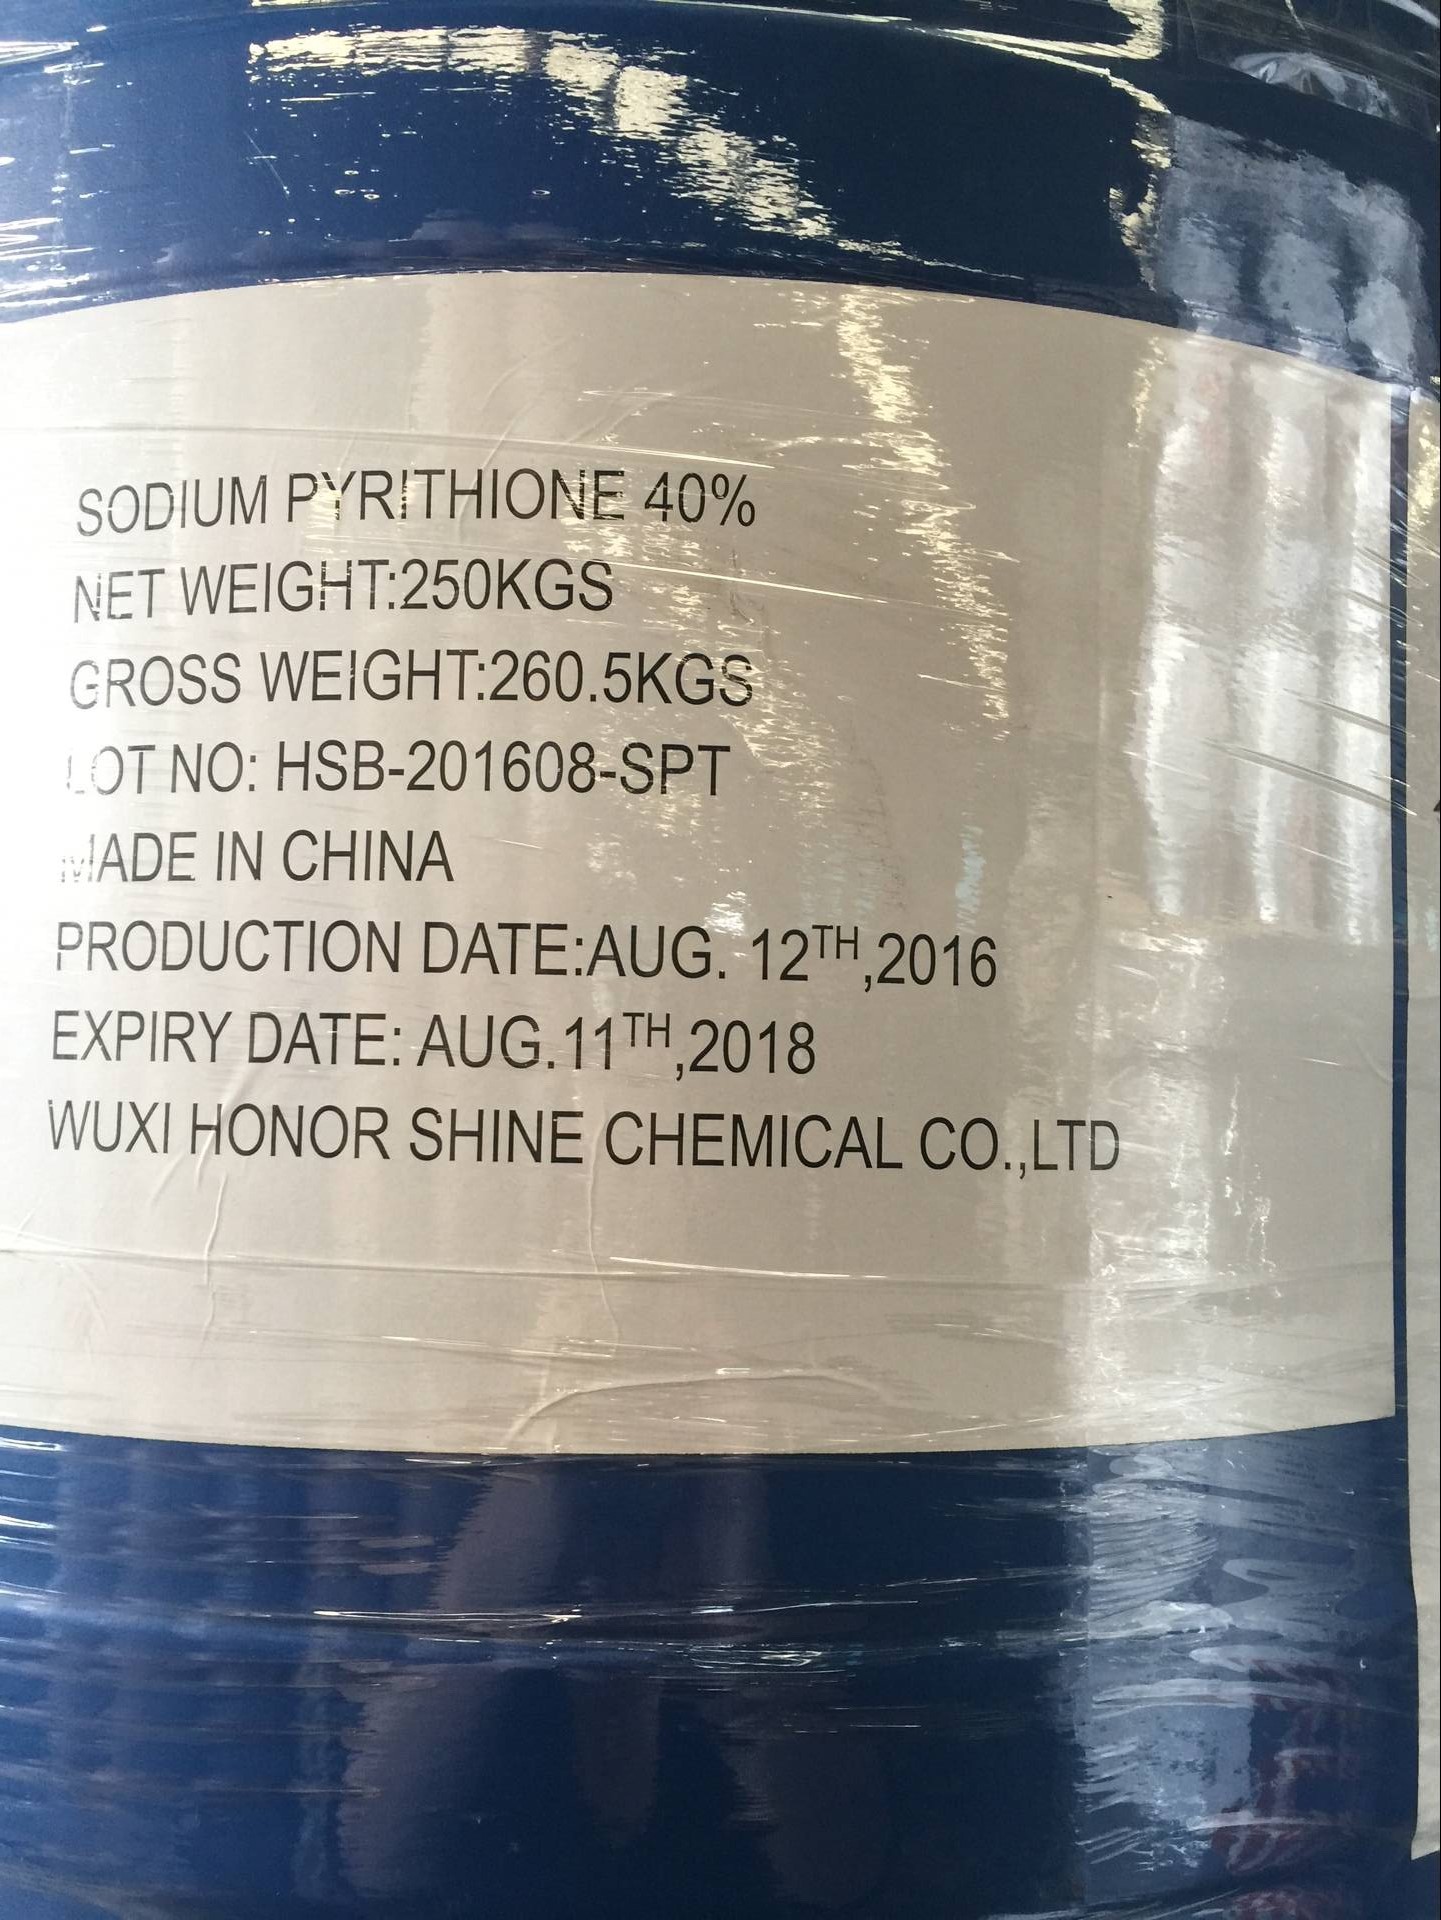 Sodium Pyrithione （CAS NO.:3811-73-2）